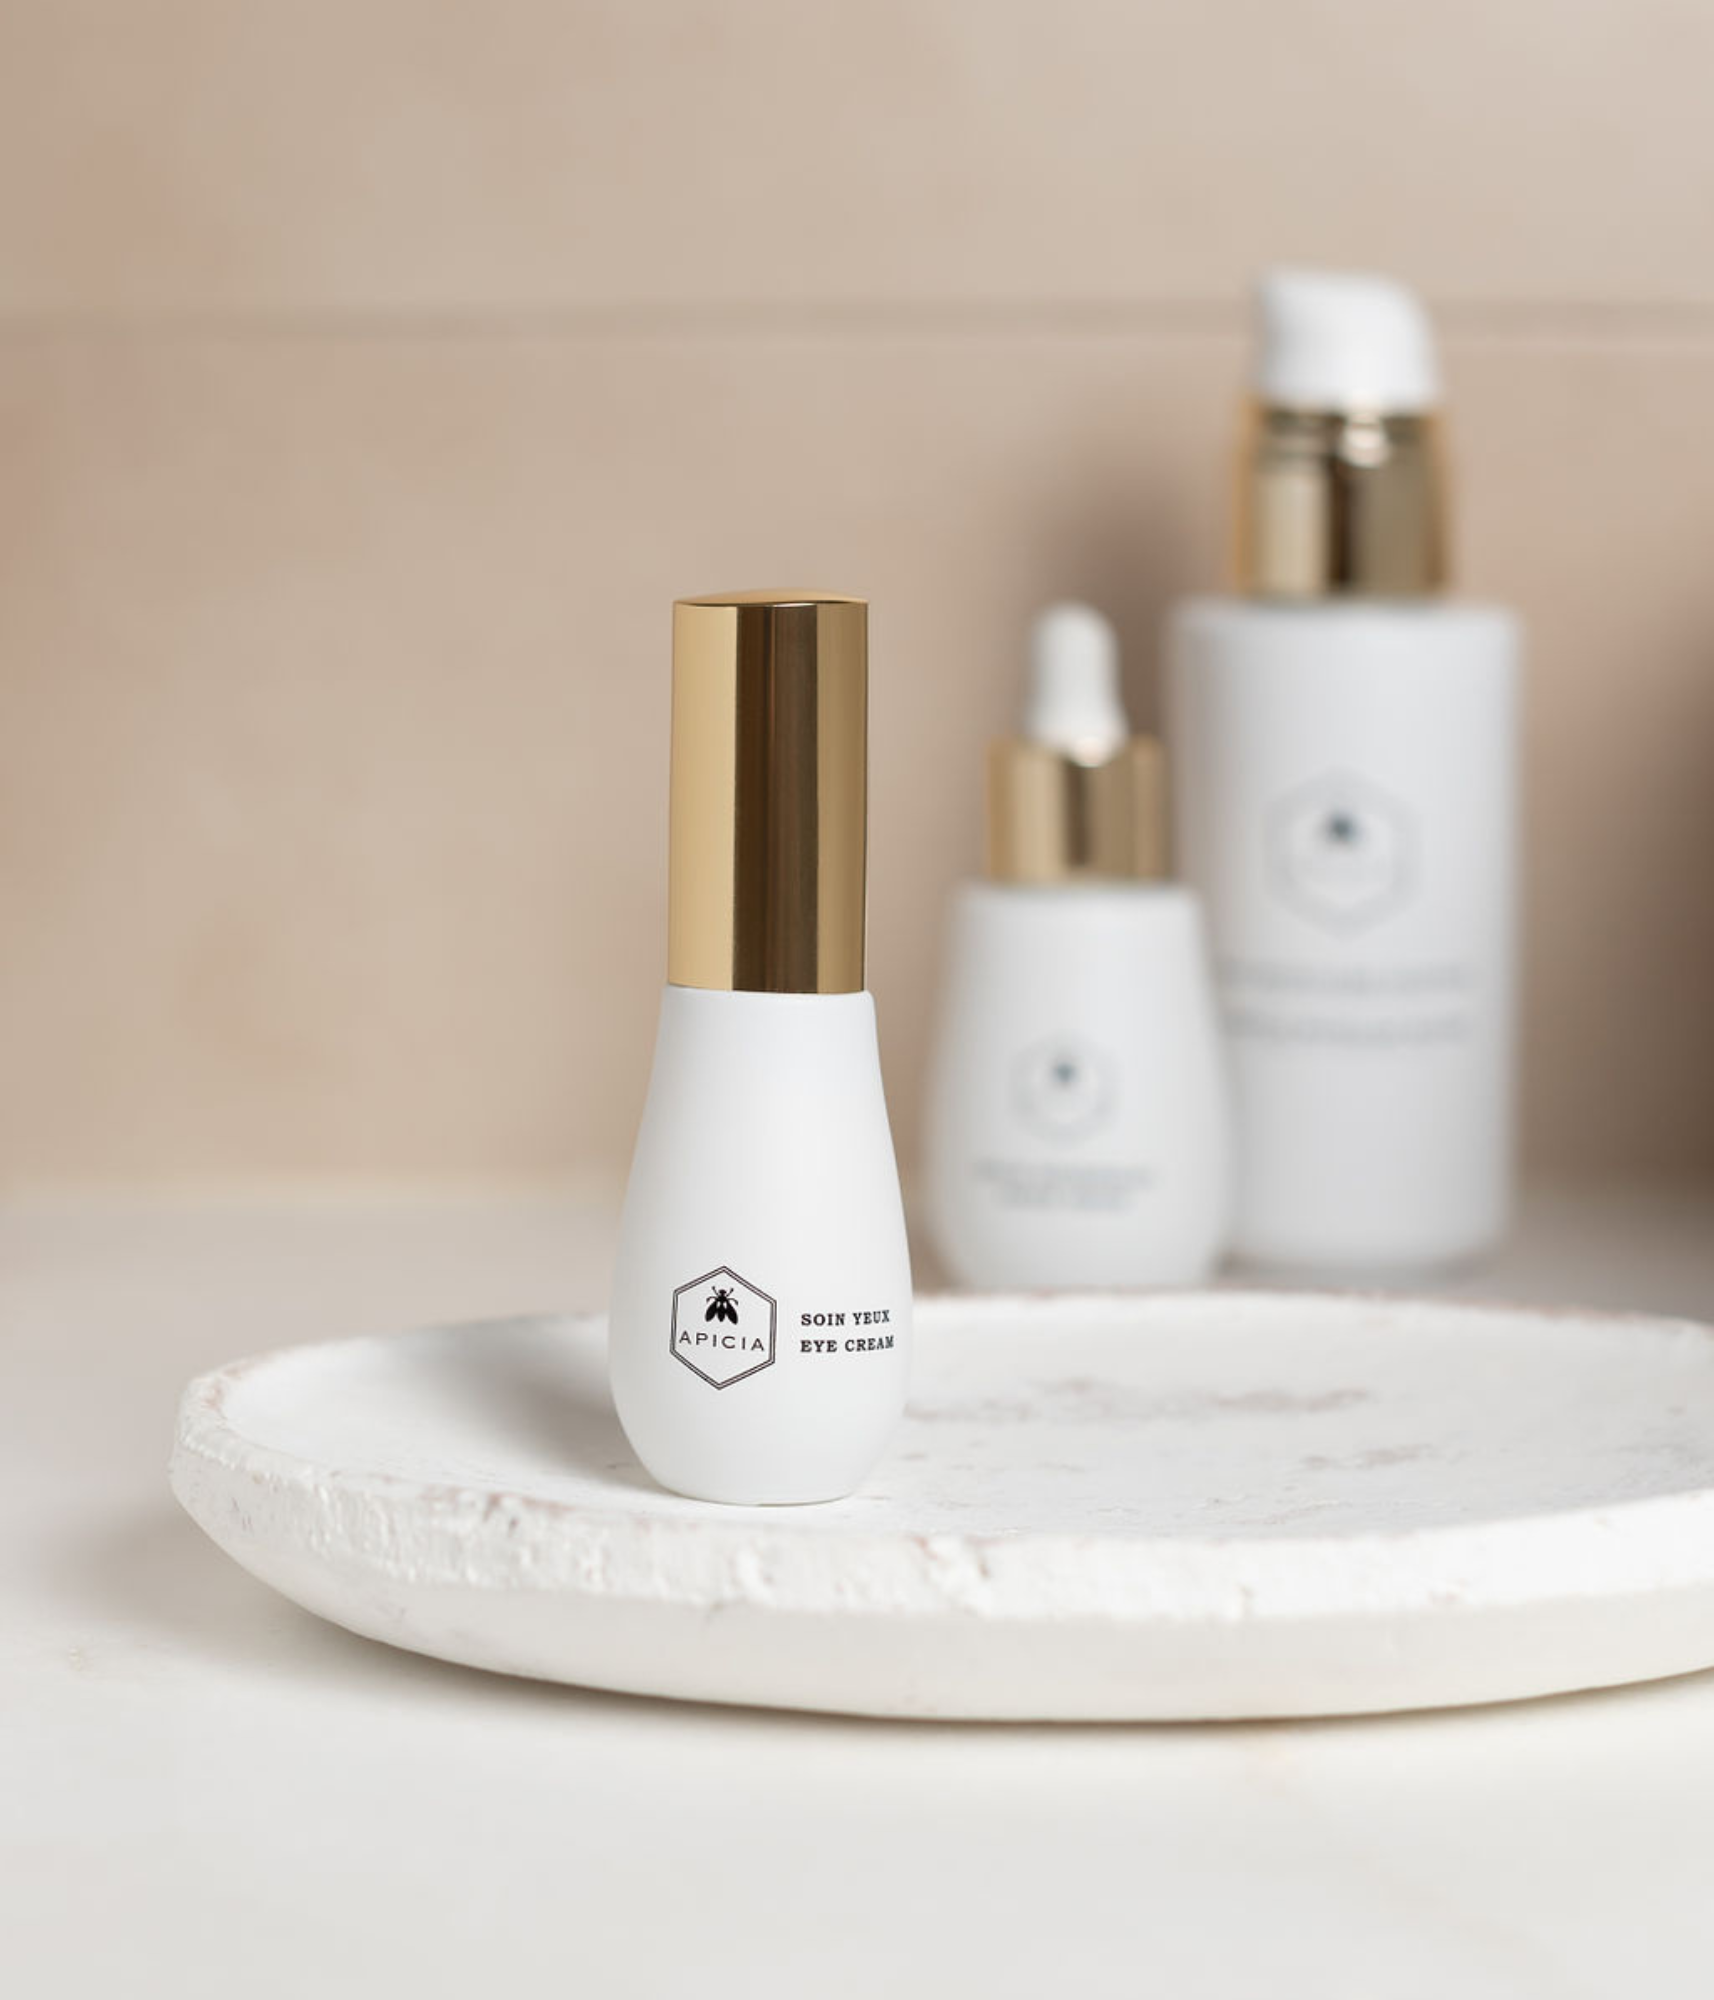 Salle de bain avec un soin contour des yeux blanc et doré, ainsi que deux autres produits de beauté en flacon blanc.